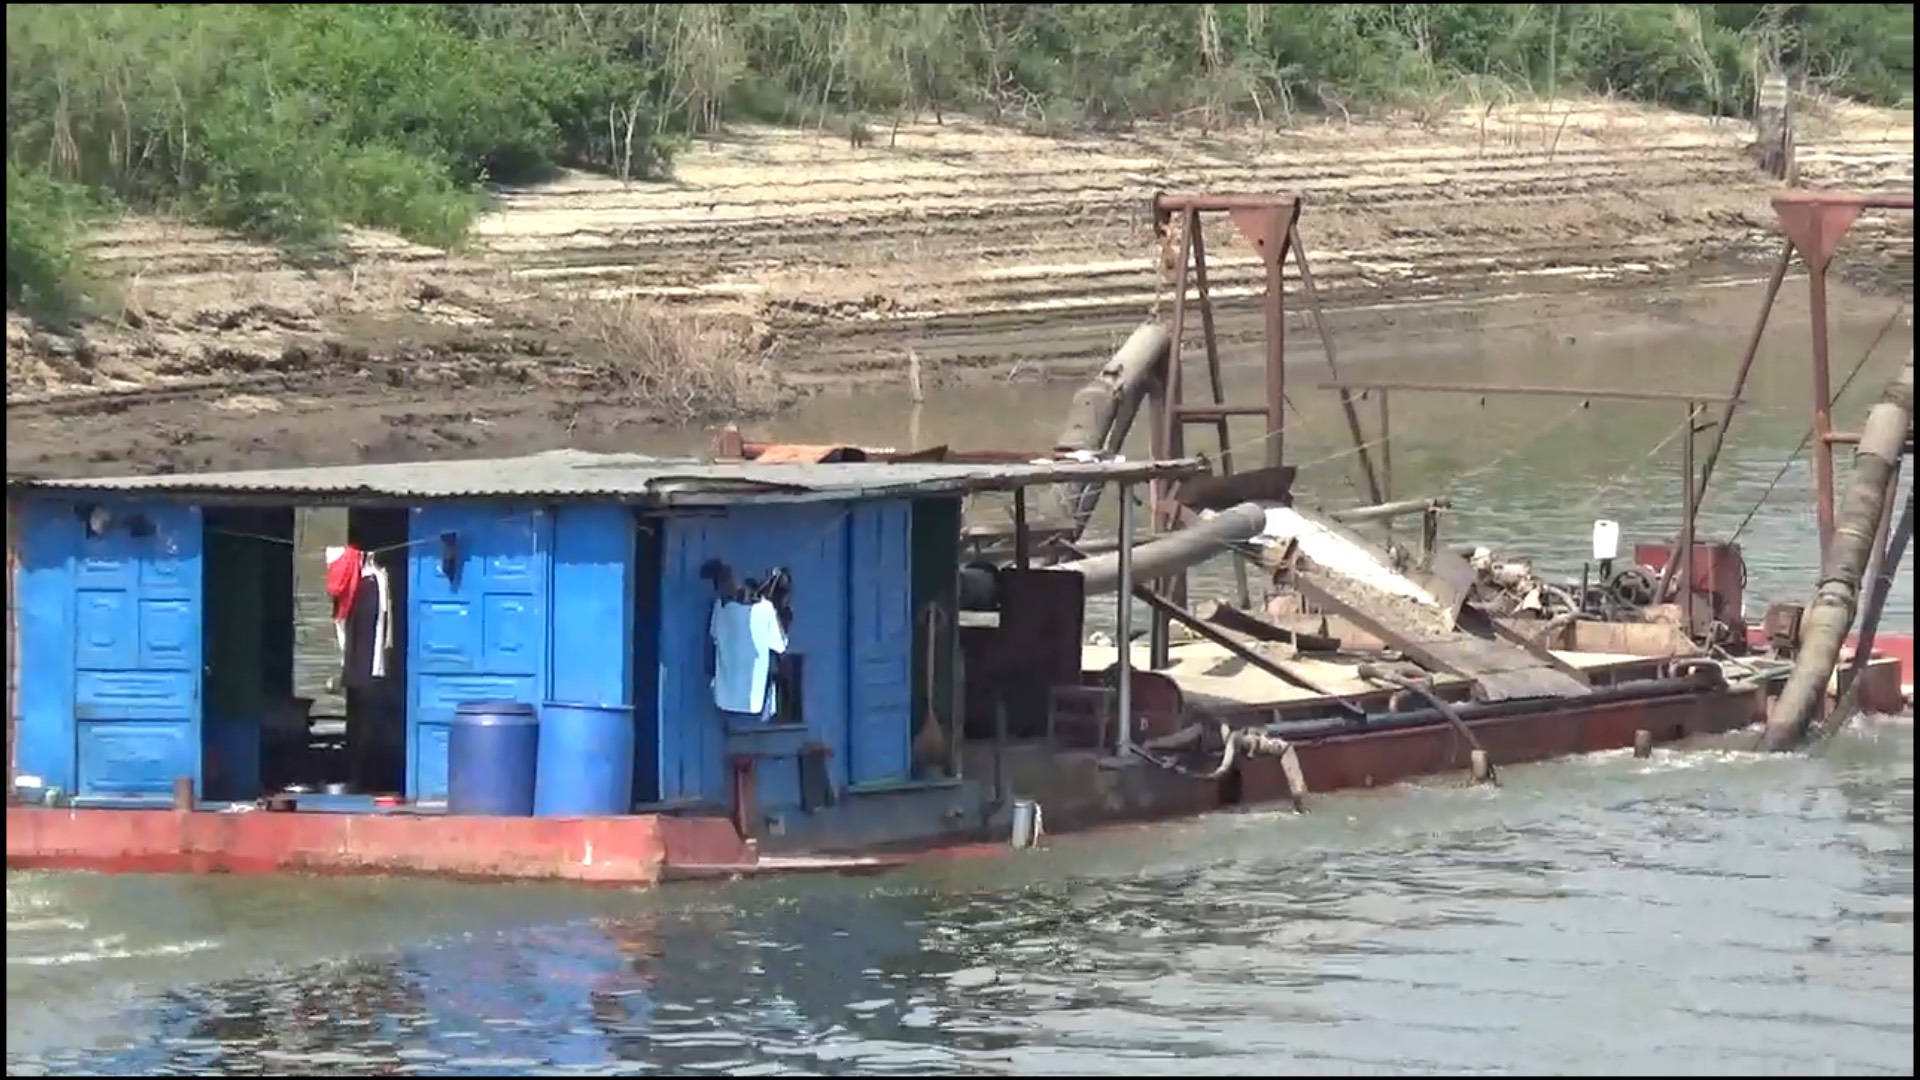 Vụ tàu không đăng kiểm nạo vét cát hồ thủy điện ở Đắk Lắk: Đình chỉ hoạt động của Công ty Sông Hồng  - Ảnh 1.